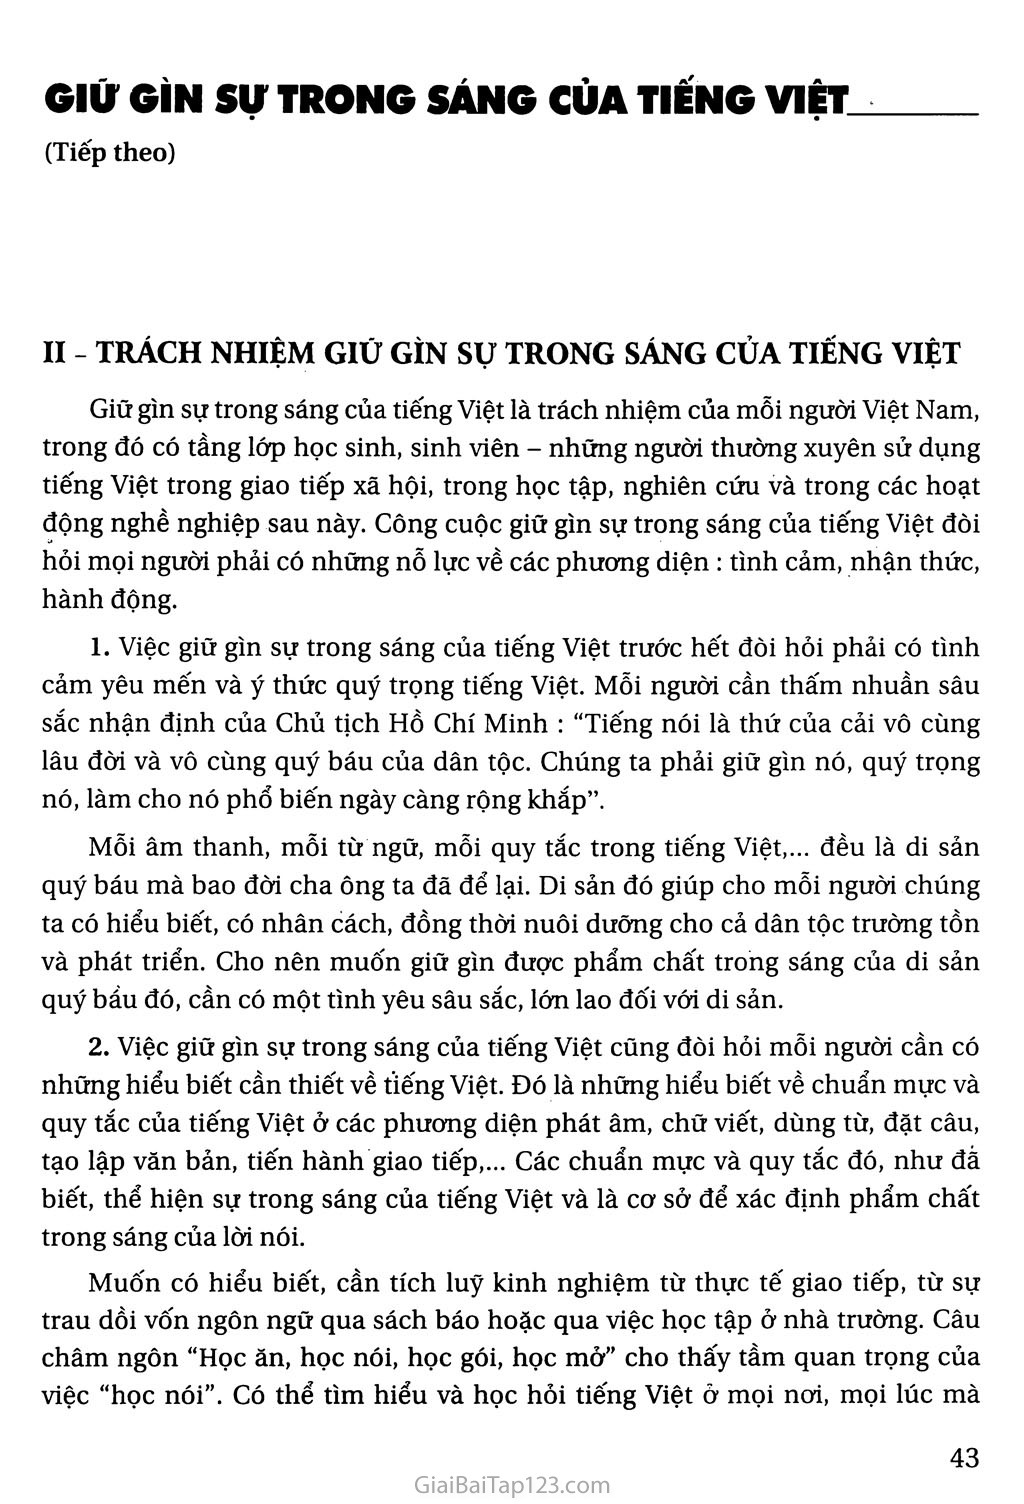 Giữ gìn sự trong sáng của Tiếng Việt (tiếp theo) trang 1